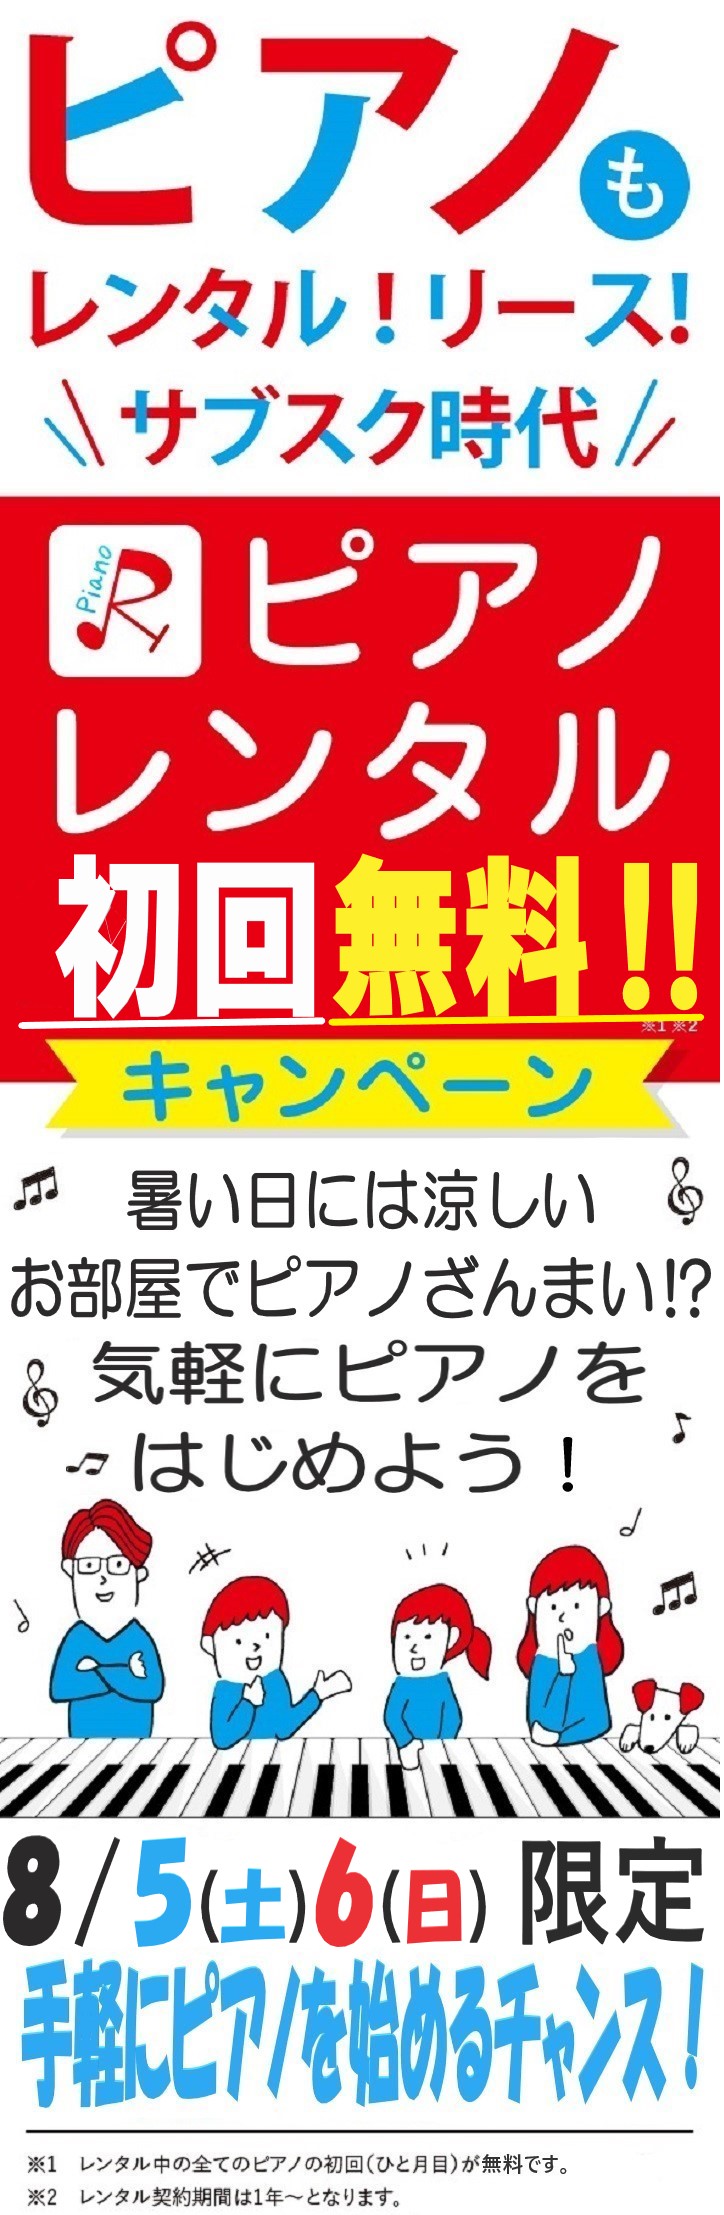 【キャンペーン】8/5(土)6(日)レンタルが初回無料に🎹気楽にはじめよう🎵